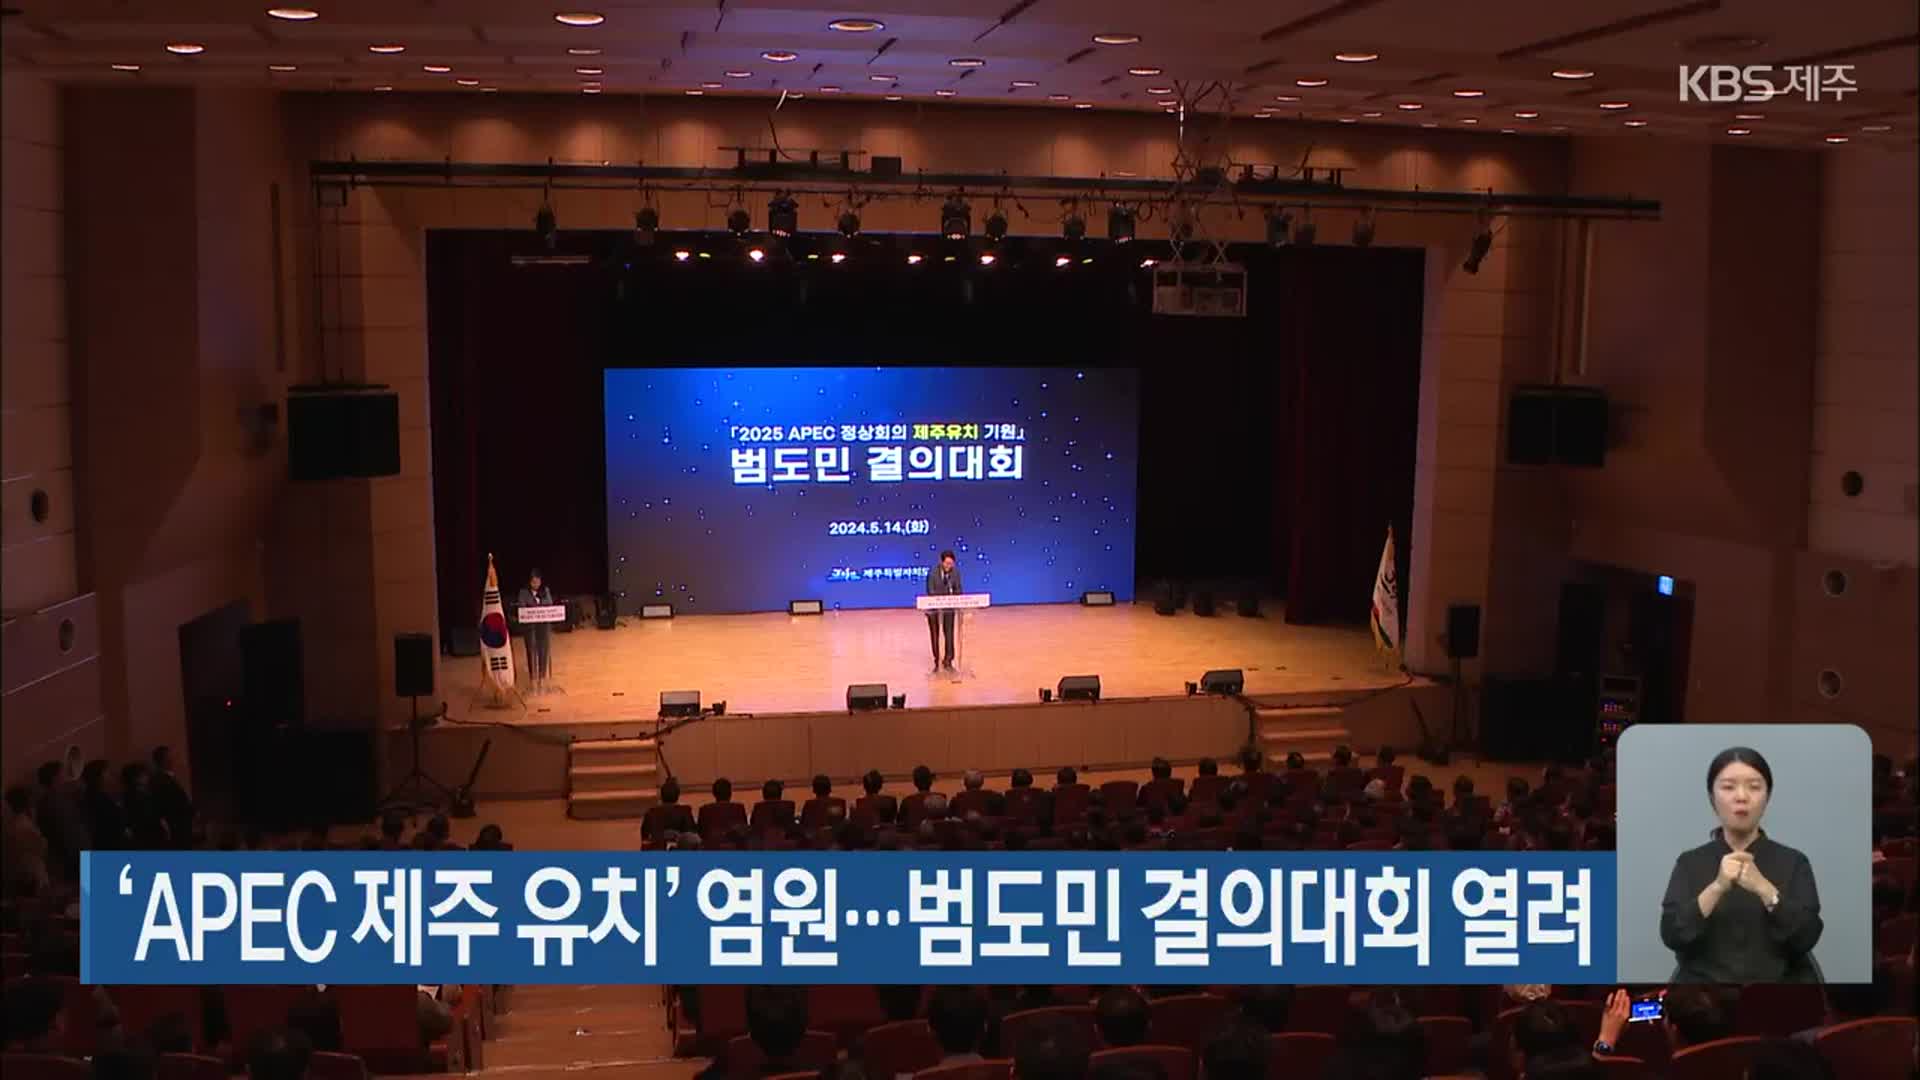 ‘APEC 제주 유치’ 염원…범도민 결의대회 열려